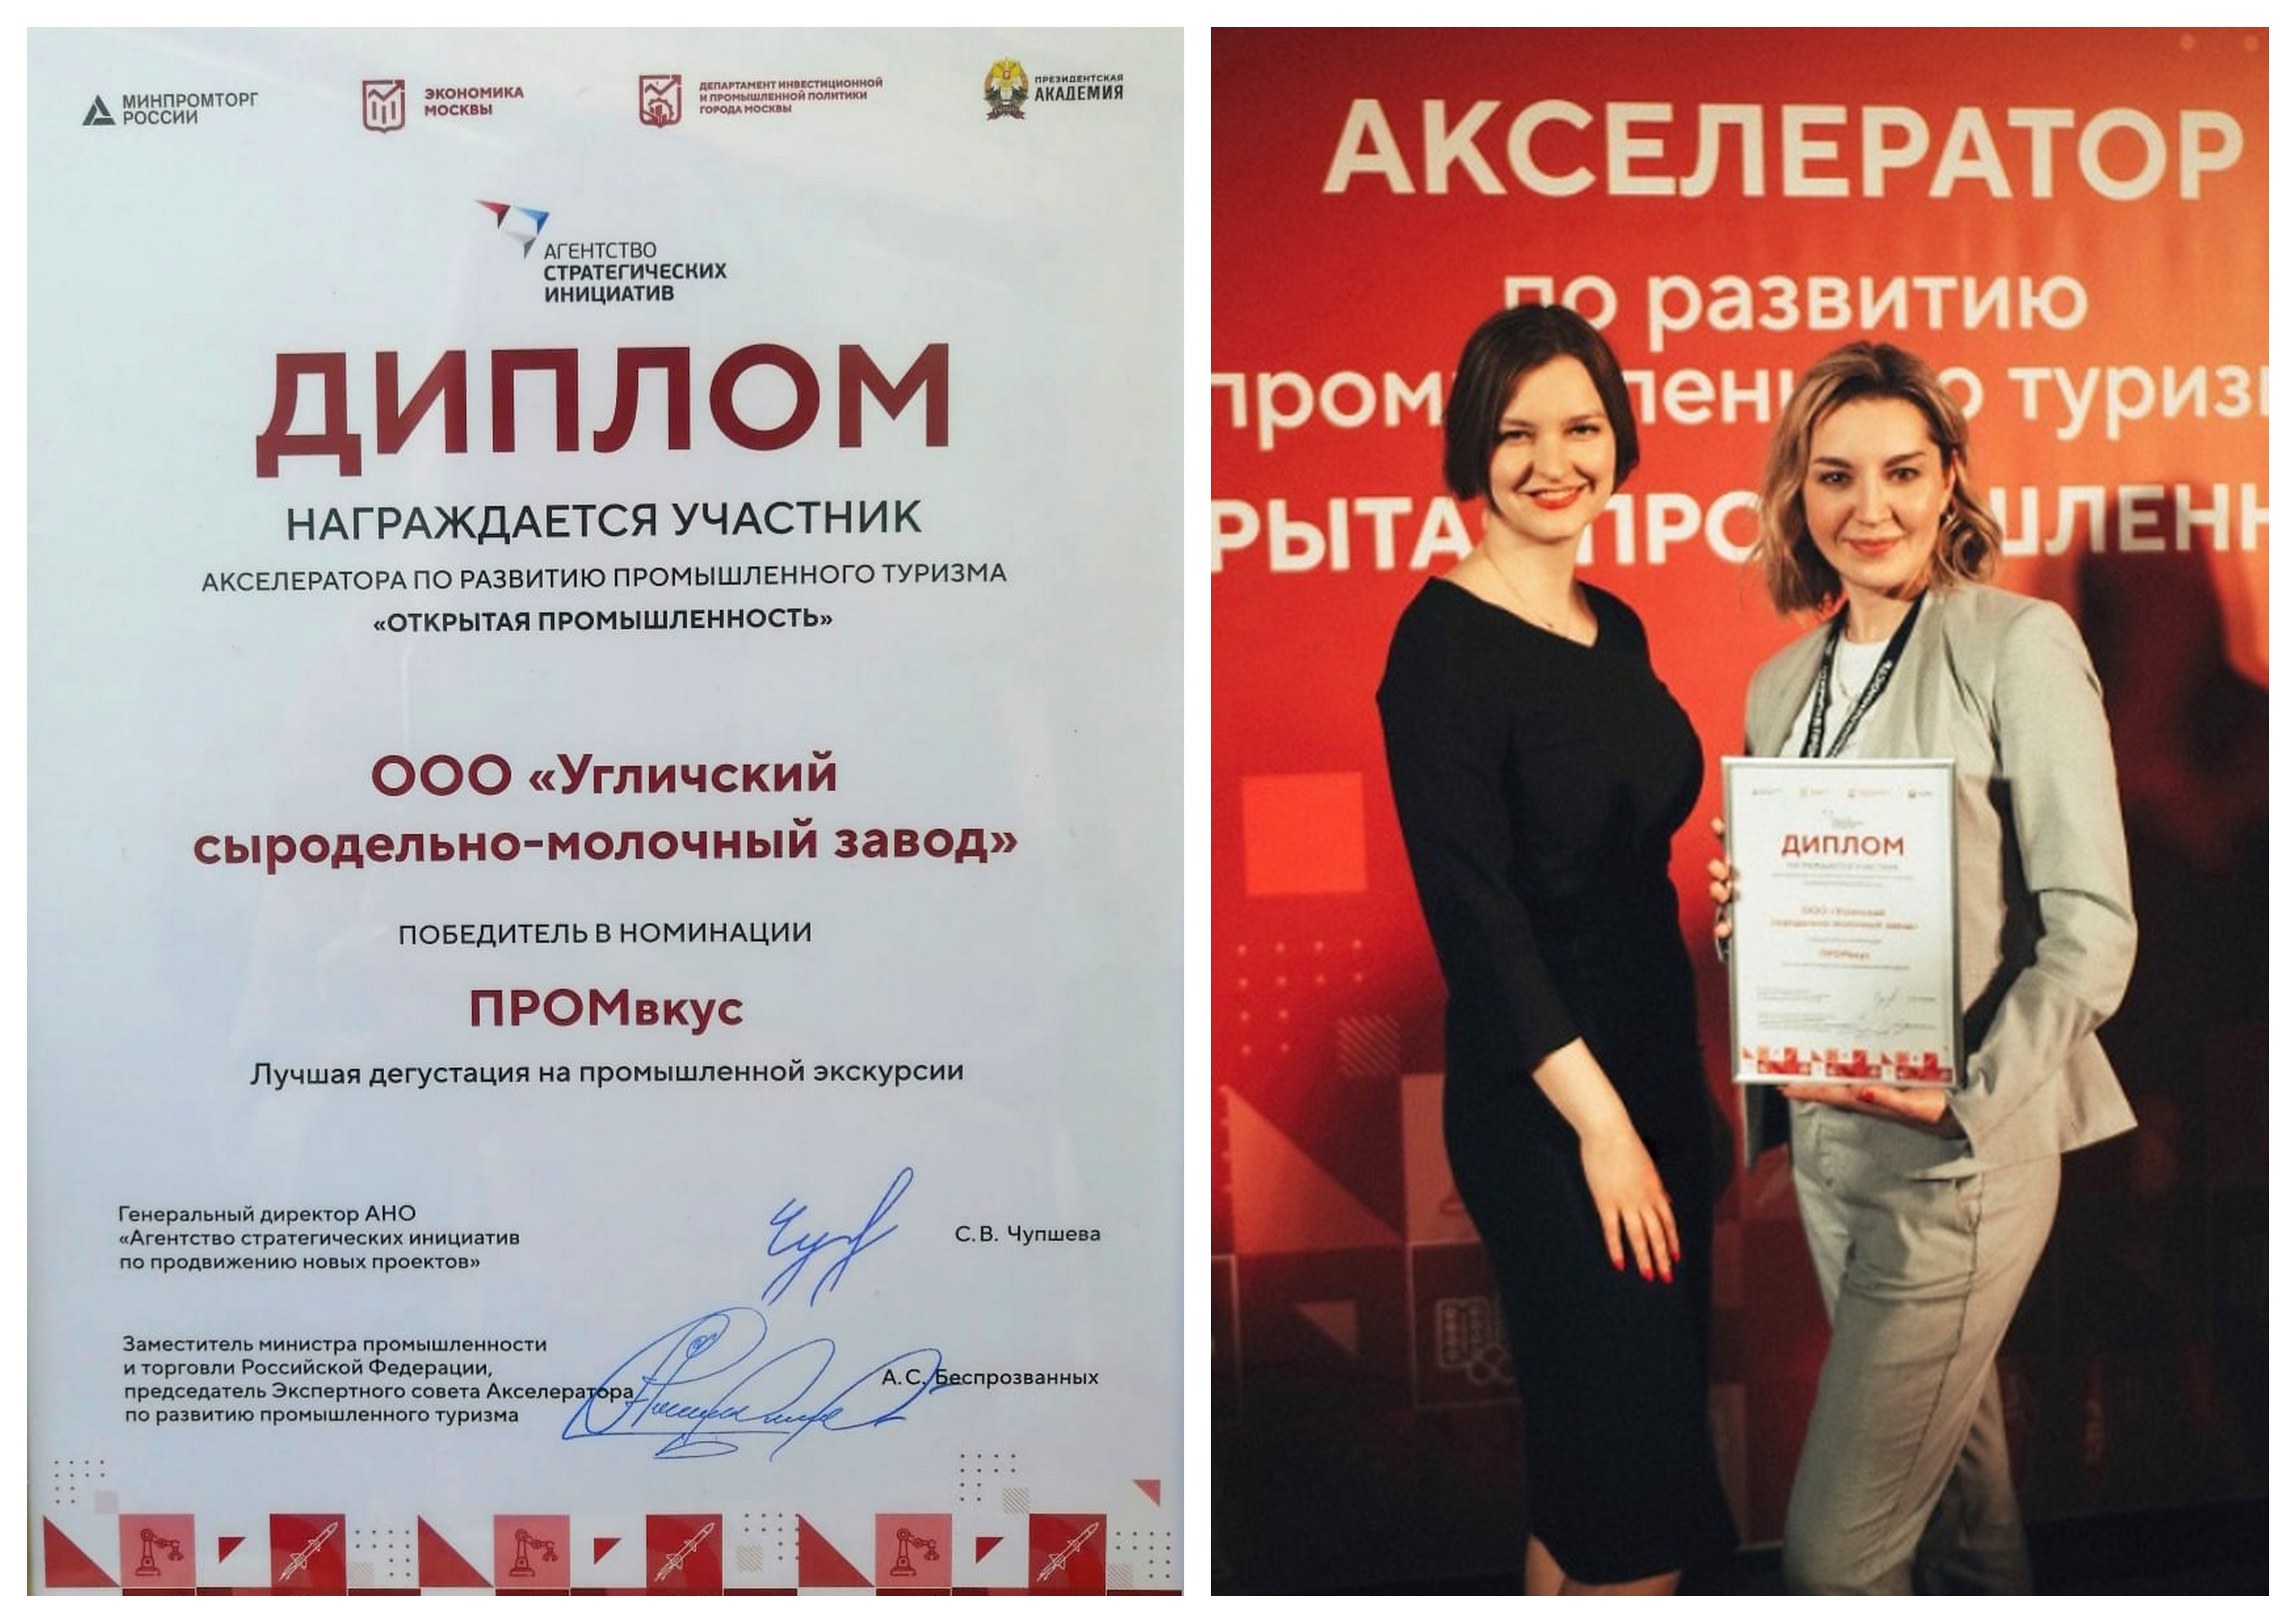 УСМЗ стал победителем II Всероссийского Акселератора по промышленному туризму